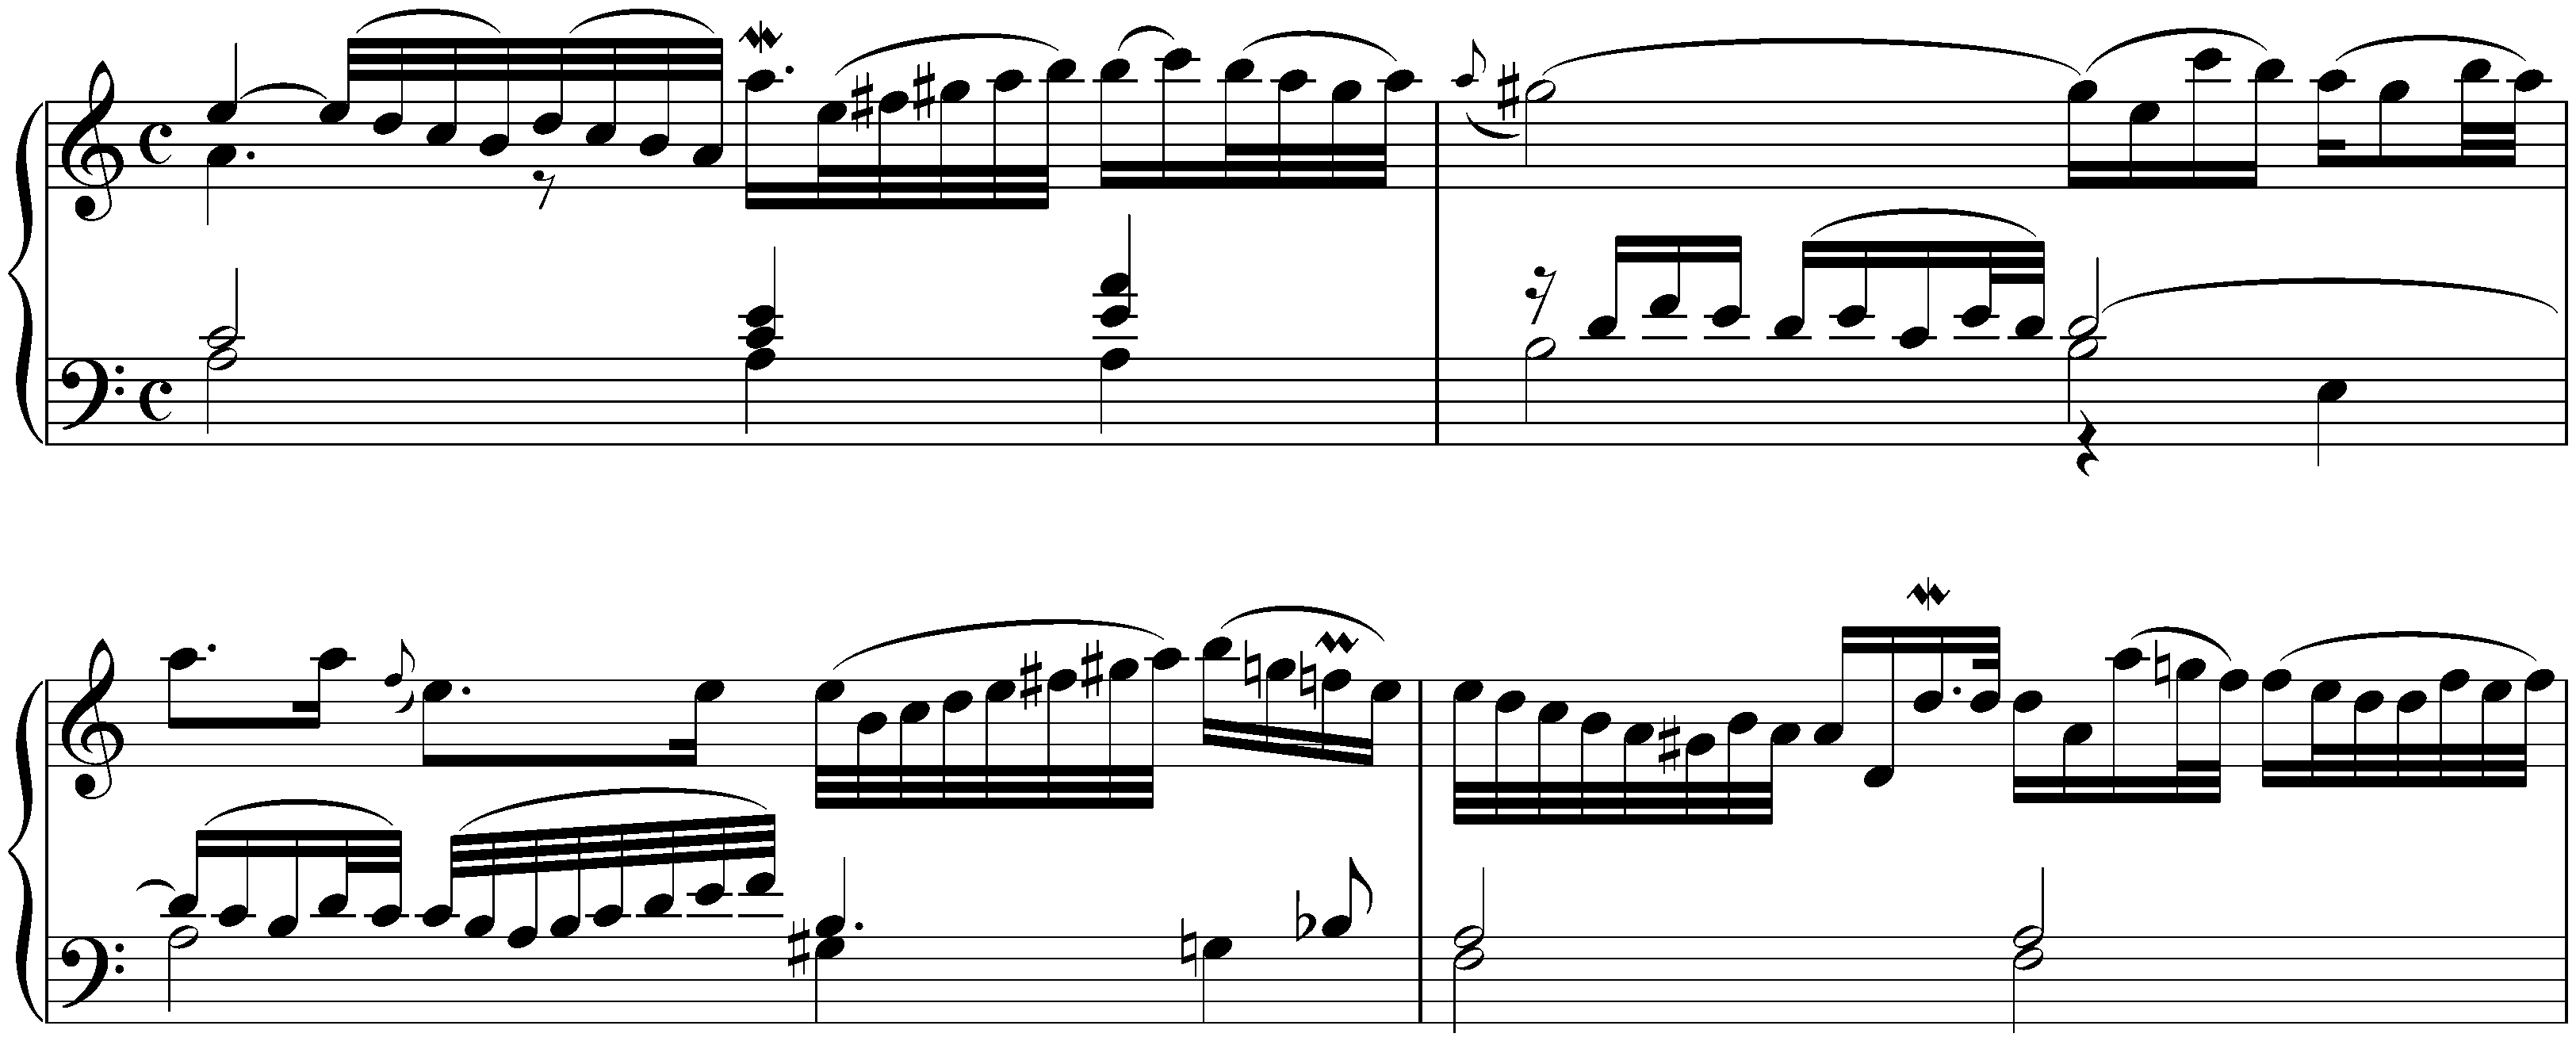 Sonata in A minor after Johann Adam Reincken, BWV 965; 1. Adagio